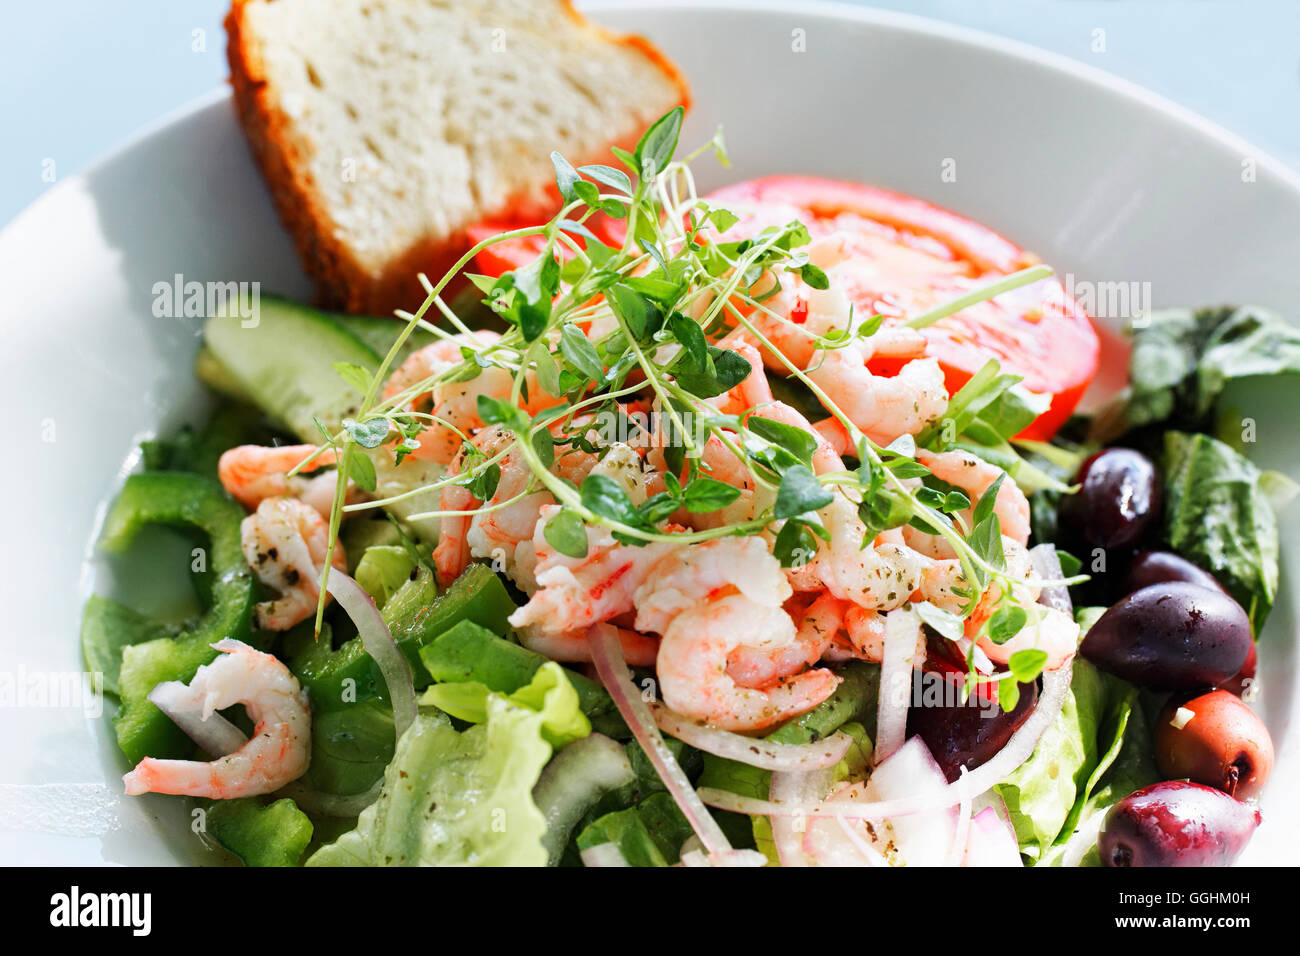 Salad with shrimps, Stockholm, Sweden Stock Photo